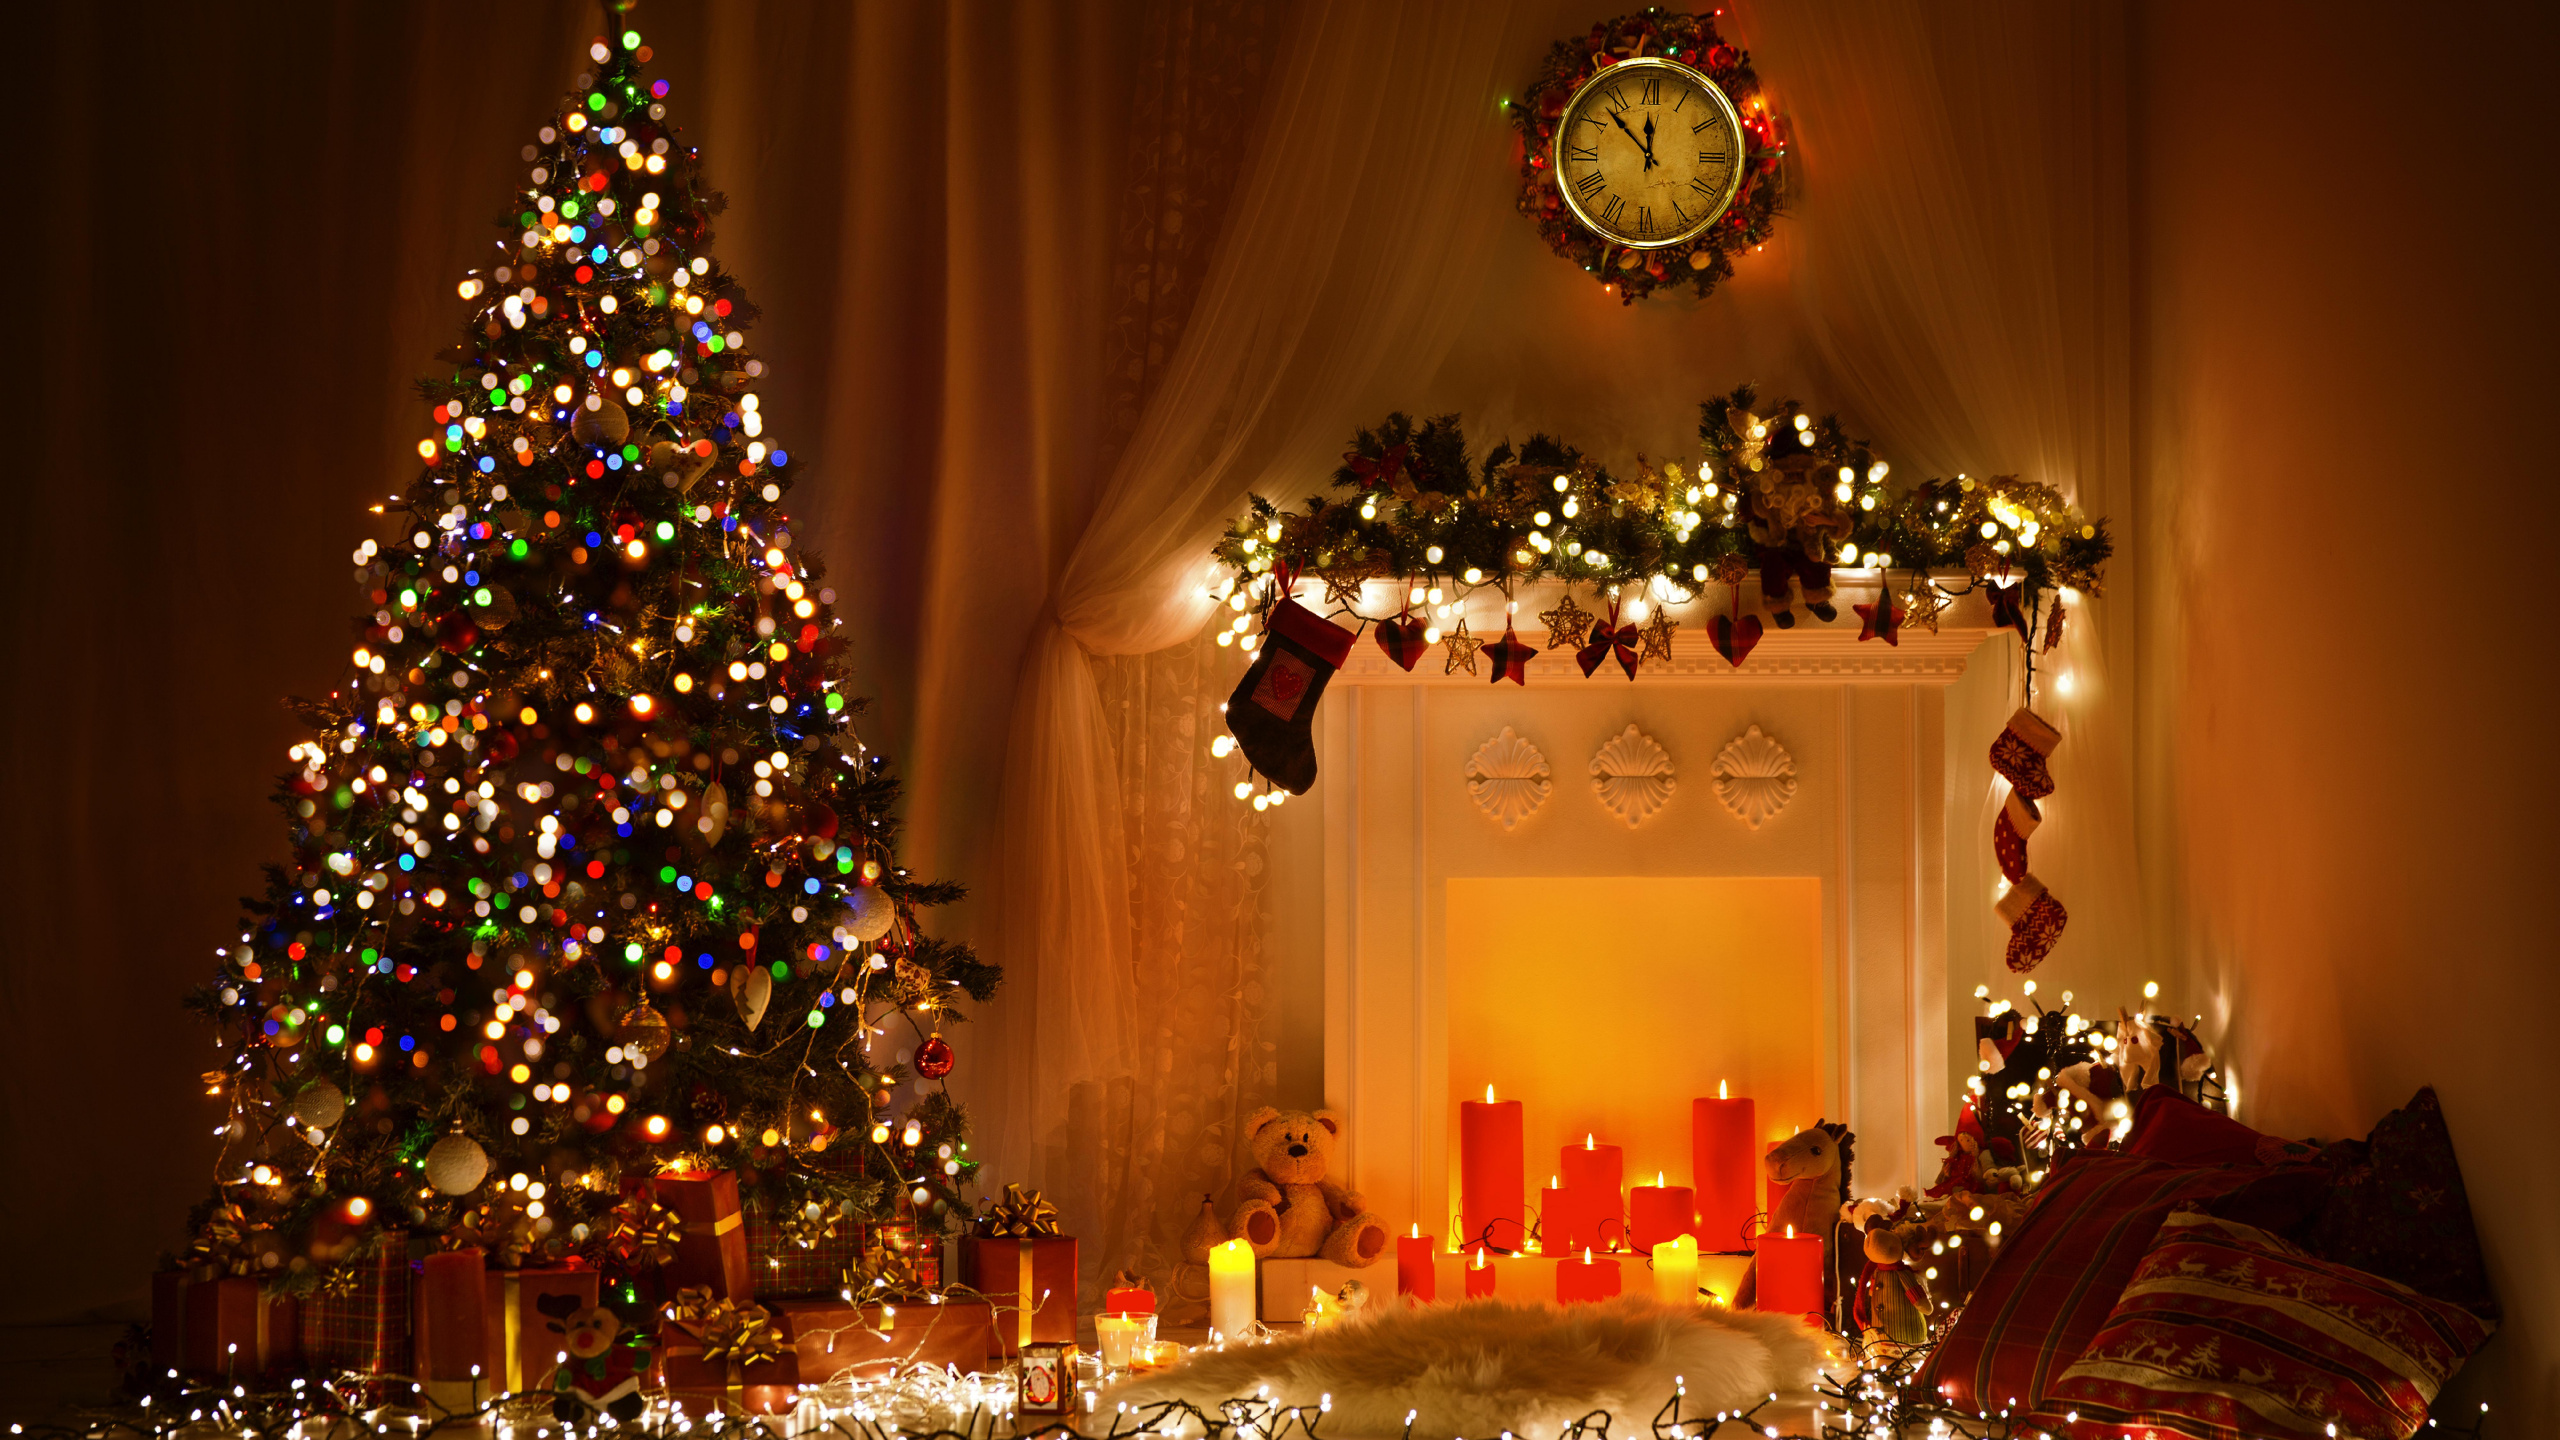 圣诞节那天, 圣诞树, 圣诞彩灯, 圣诞装饰, 假日 壁纸 2560x1440 允许